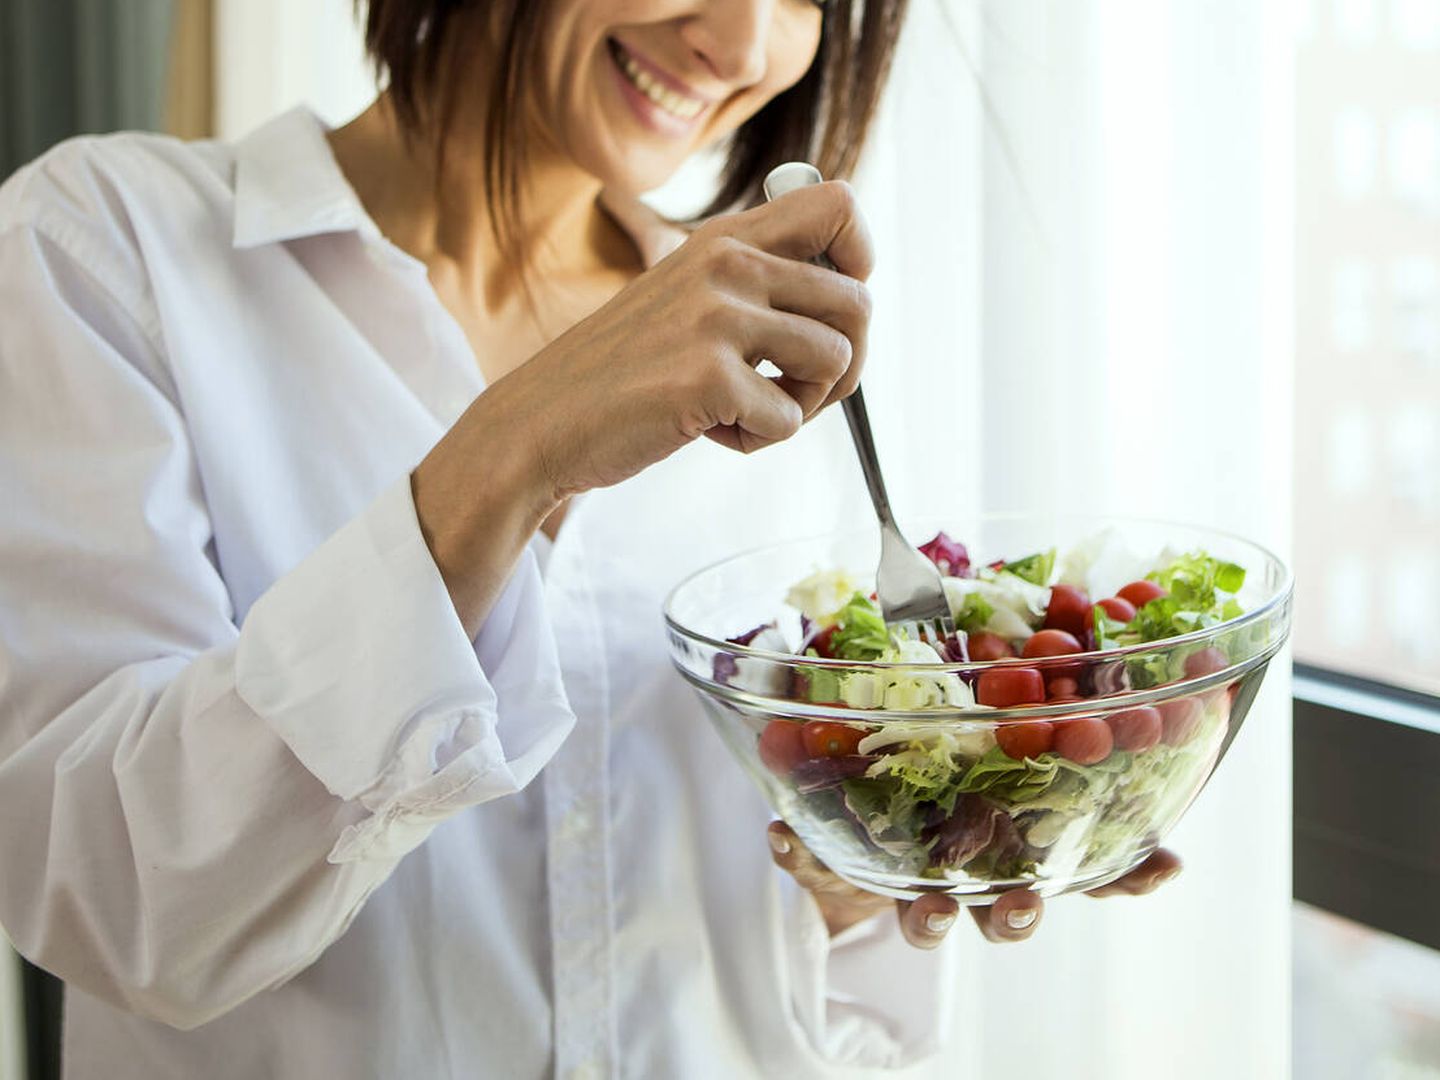 Llevar una dieta equilibrada ayuda a reducir el riesgo de colelitiasis. (iStock)